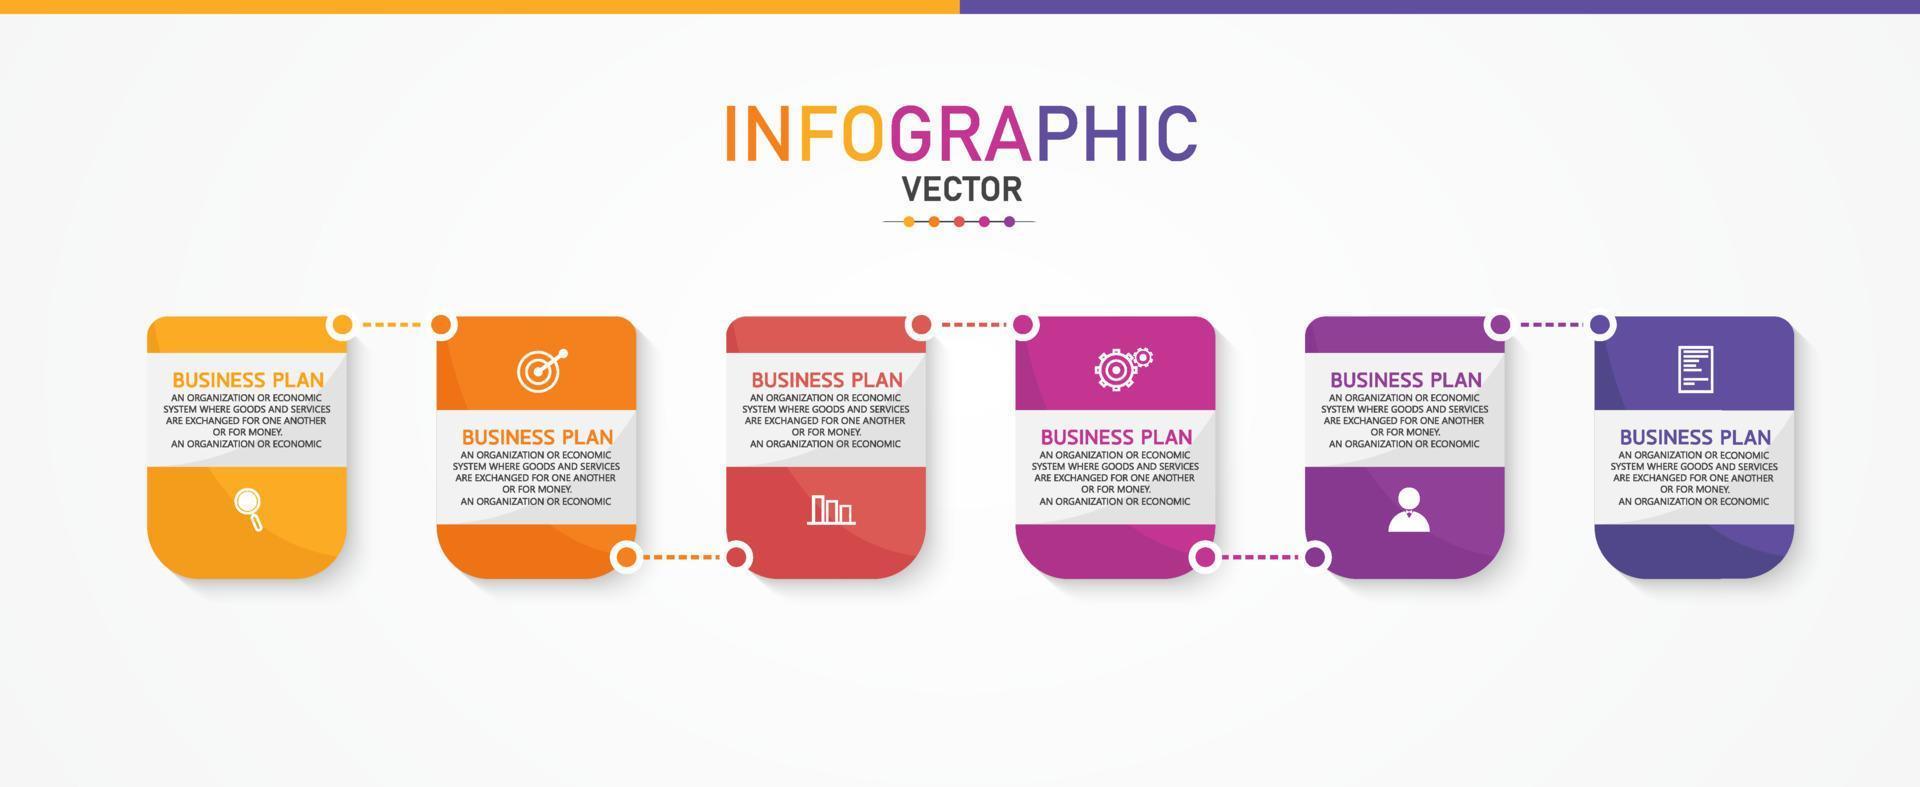 tidslinje infographic mall presentation affärsidé med ikoner, alternativ eller steg. infografik för affärsidéer kan användas för datagrafik, flödesscheman, webbplatser, banners. vektor